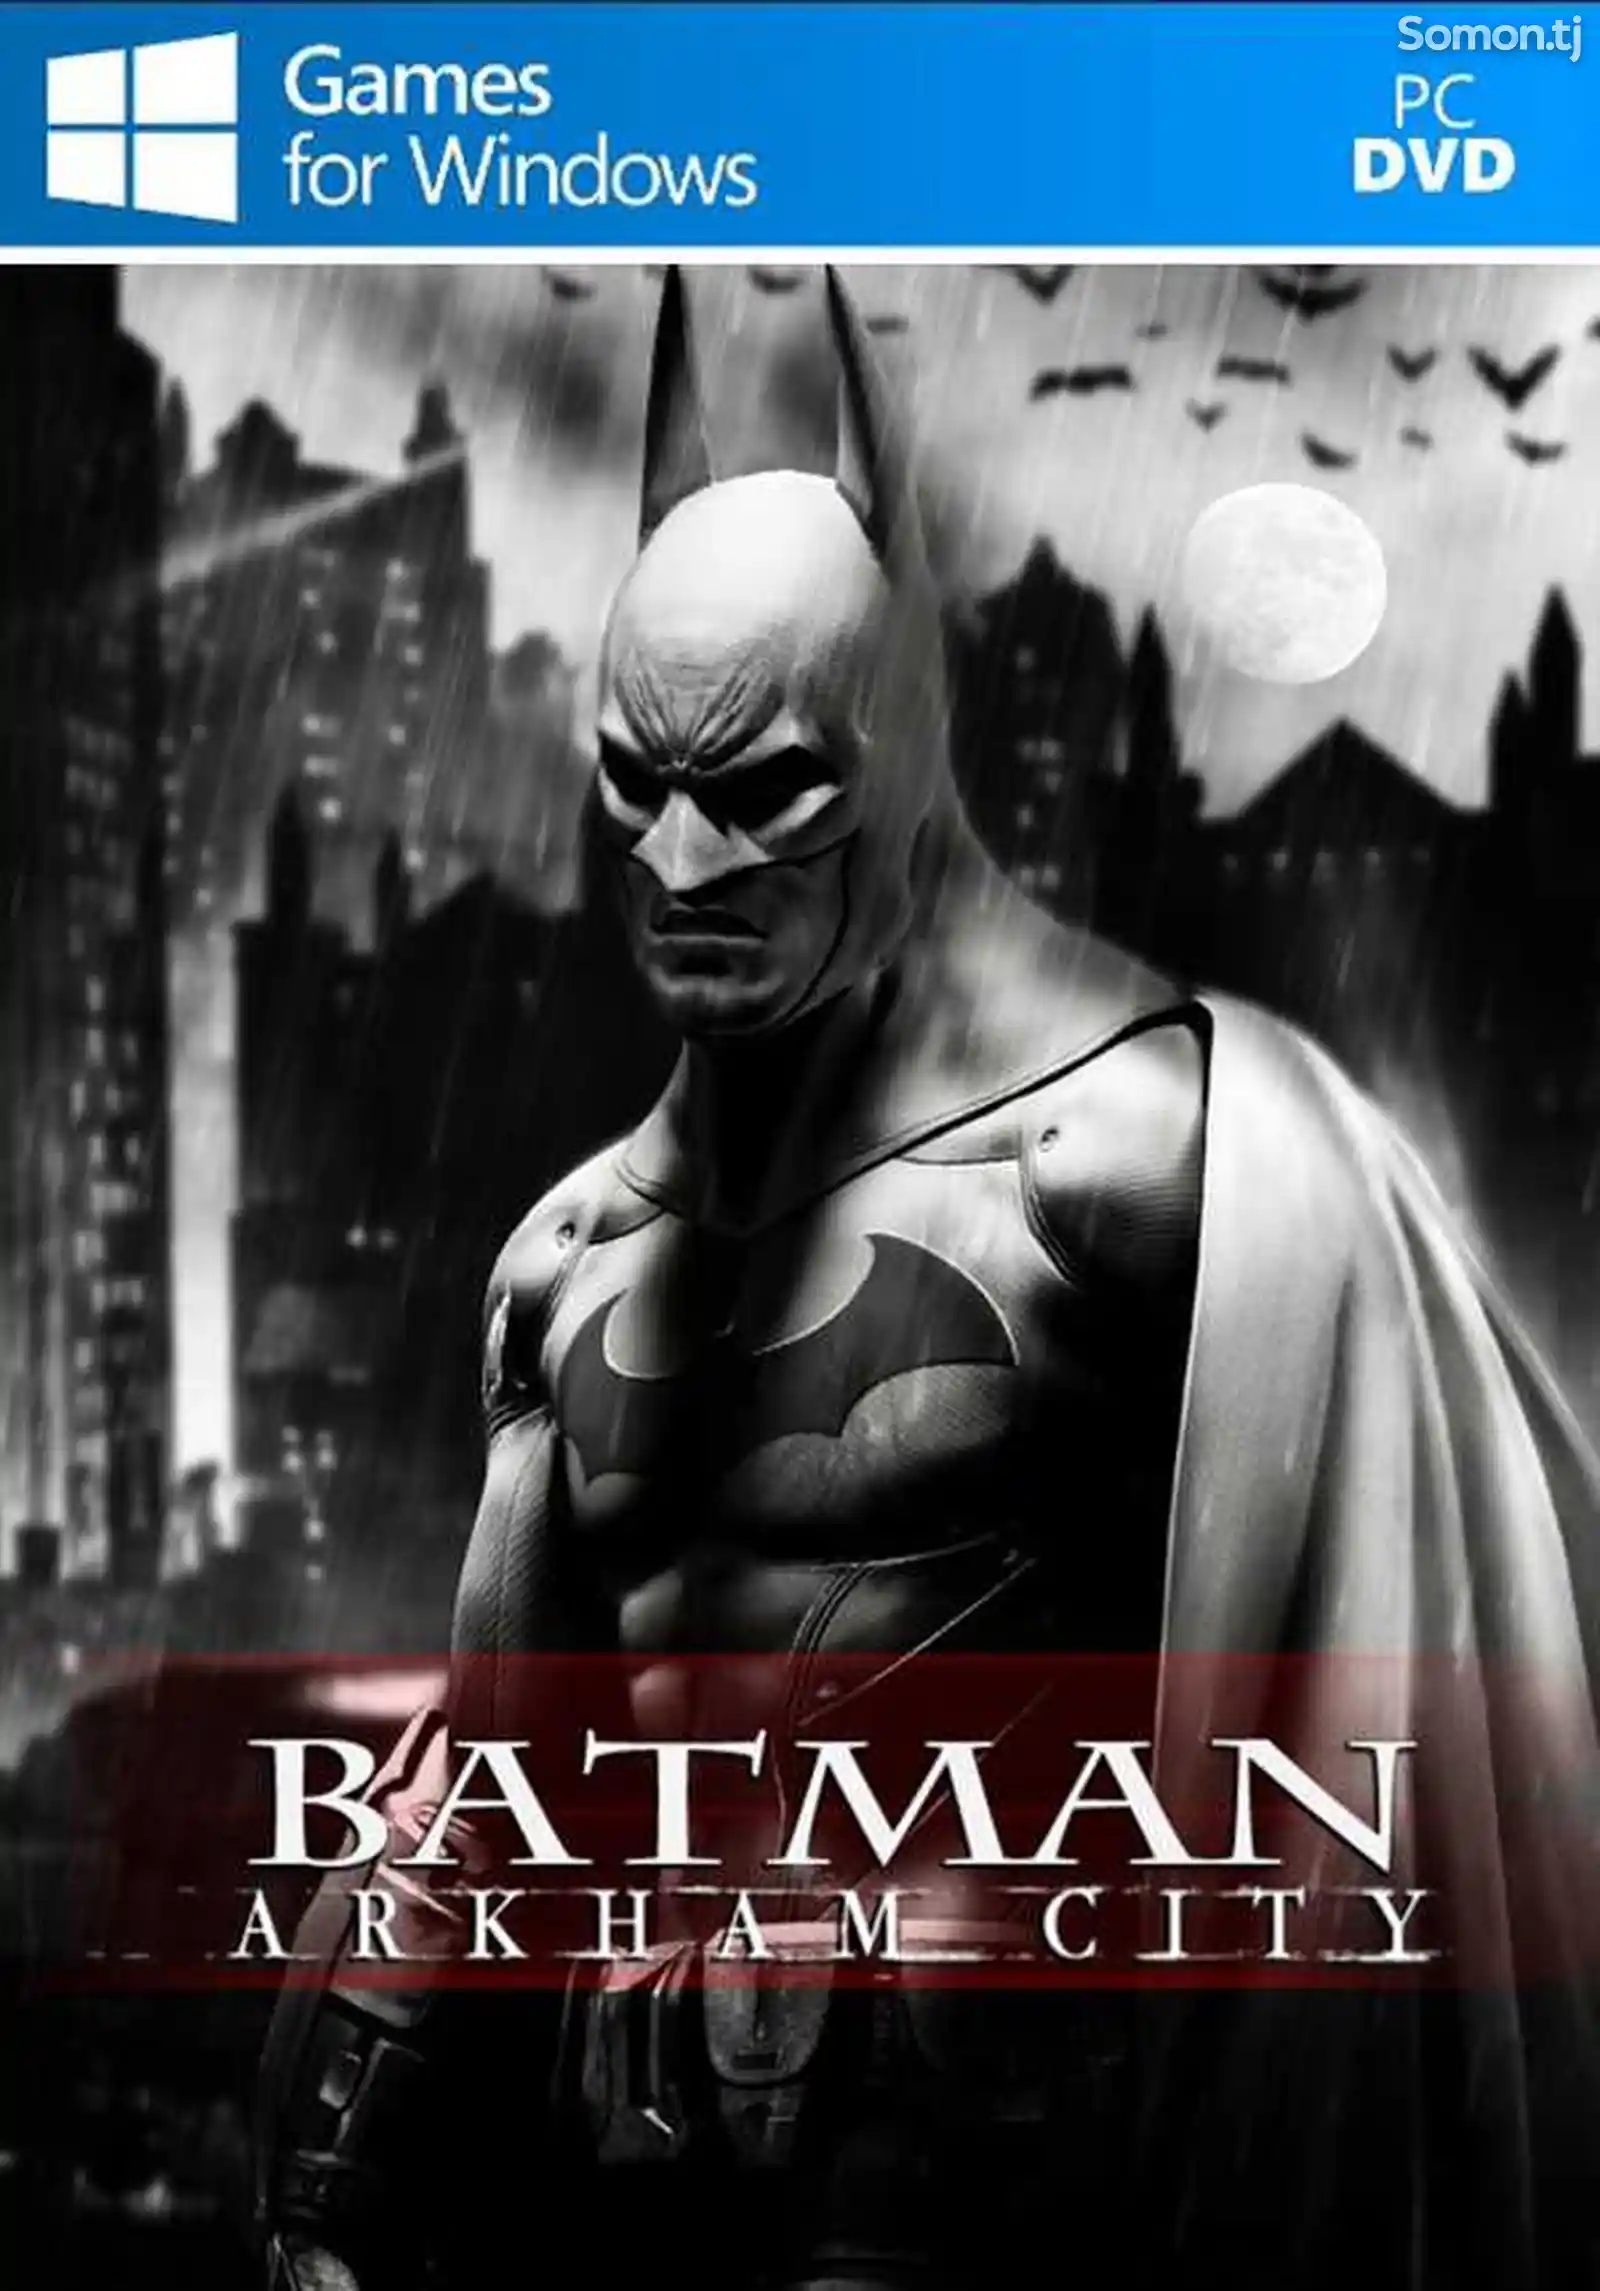 Игра Batman arkham city для компьютера-пк-pc-1